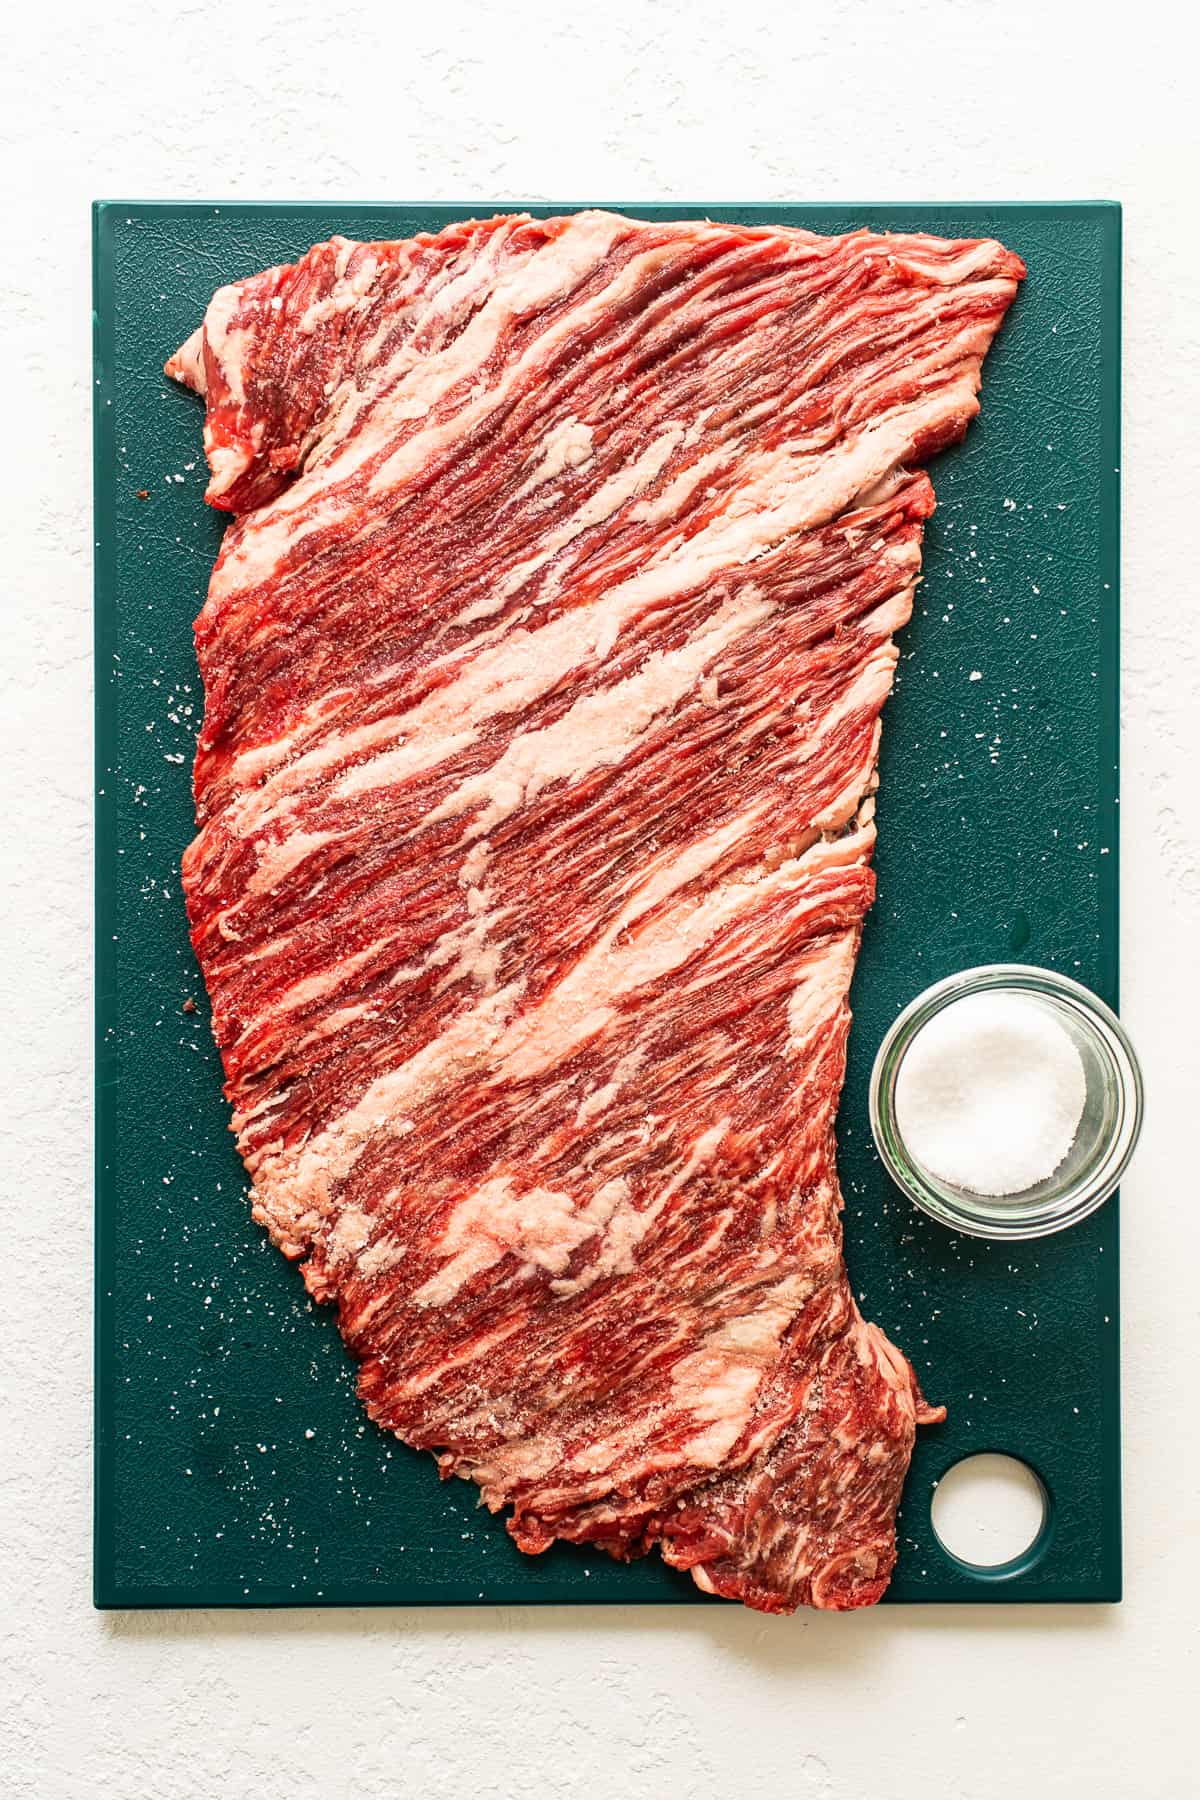 Flank steak on a cutting board.